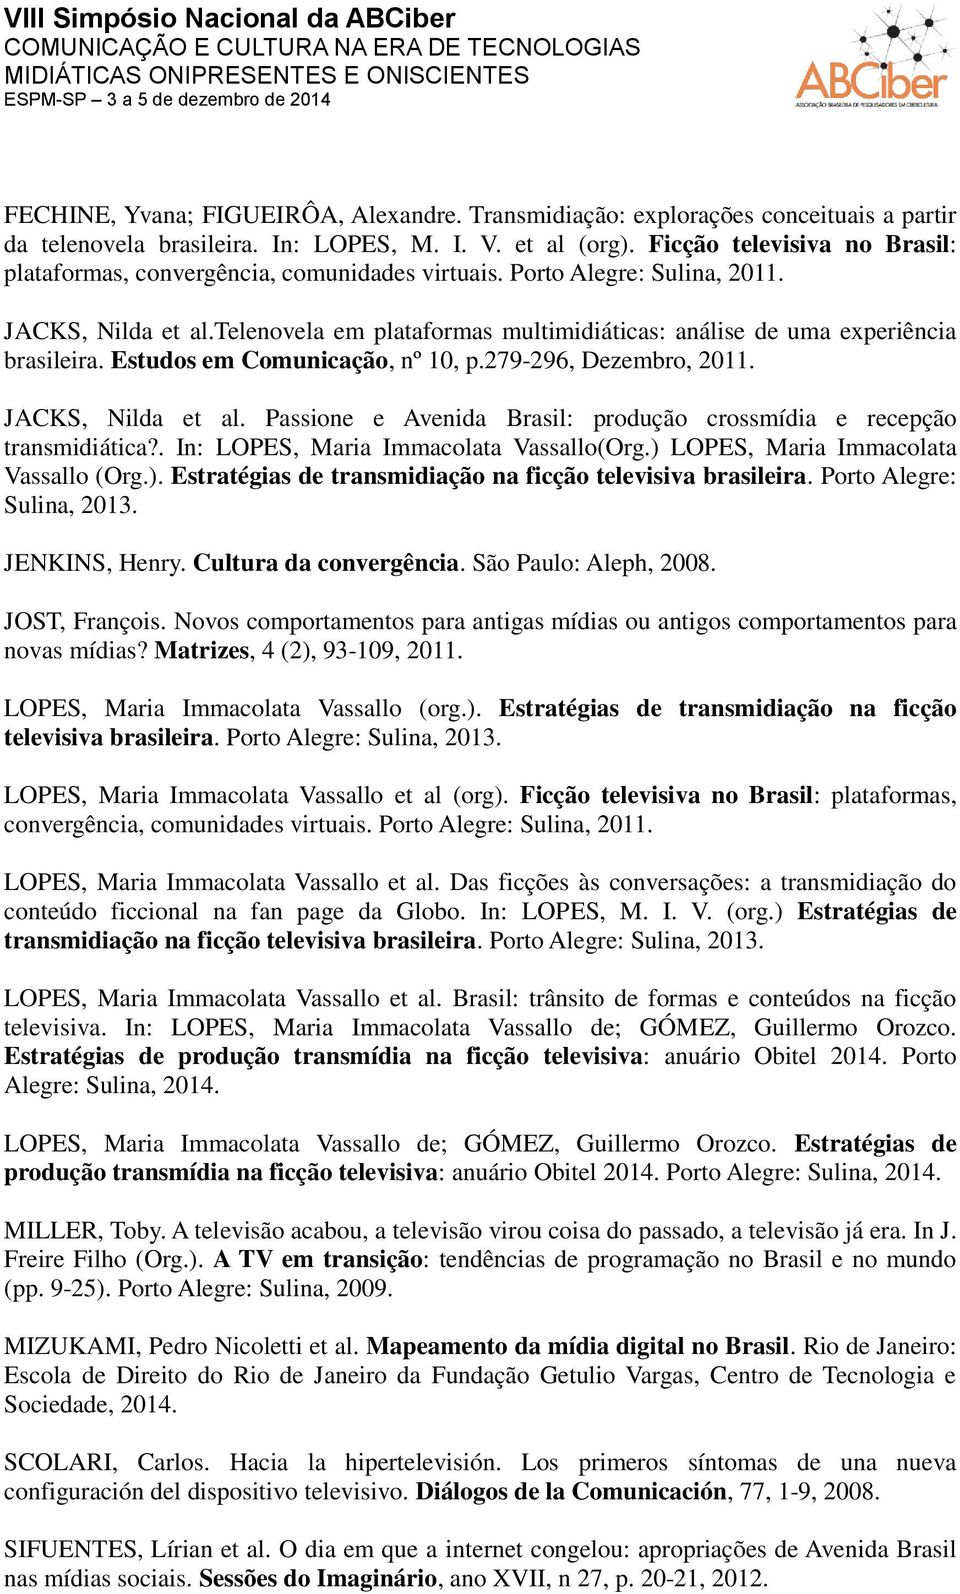 telenovela em plataformas multimidiáticas: análise de uma experiência brasileira. Estudos em Comunicação, nº 10, p.279-296, Dezembro, 2011. JACKS, Nilda et al.